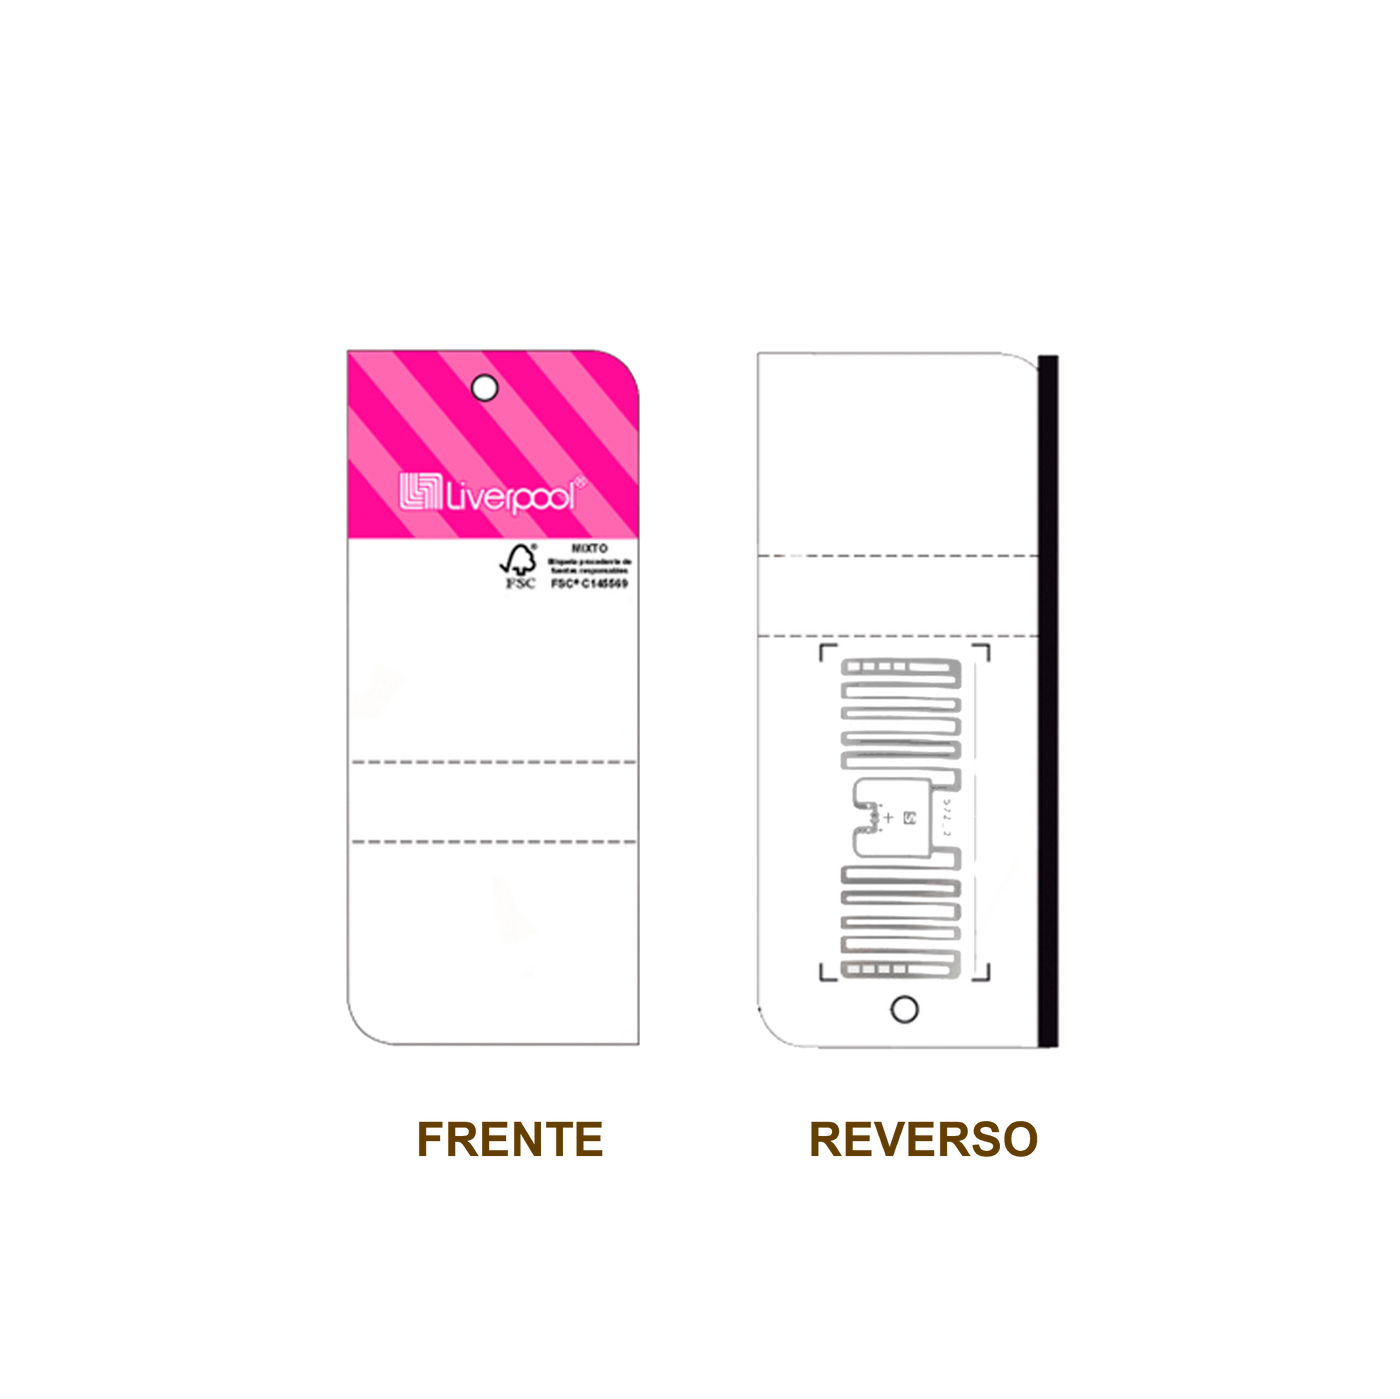 20 Millares de Etiqueta RFID cartulina blanca con impresión rosa, 87mm x 37 mm con inlay, Miniweb M730 de Avery Dennison, Clase 1 Gen 2, UHF 860-960 Mhz, EPC 128 Bit